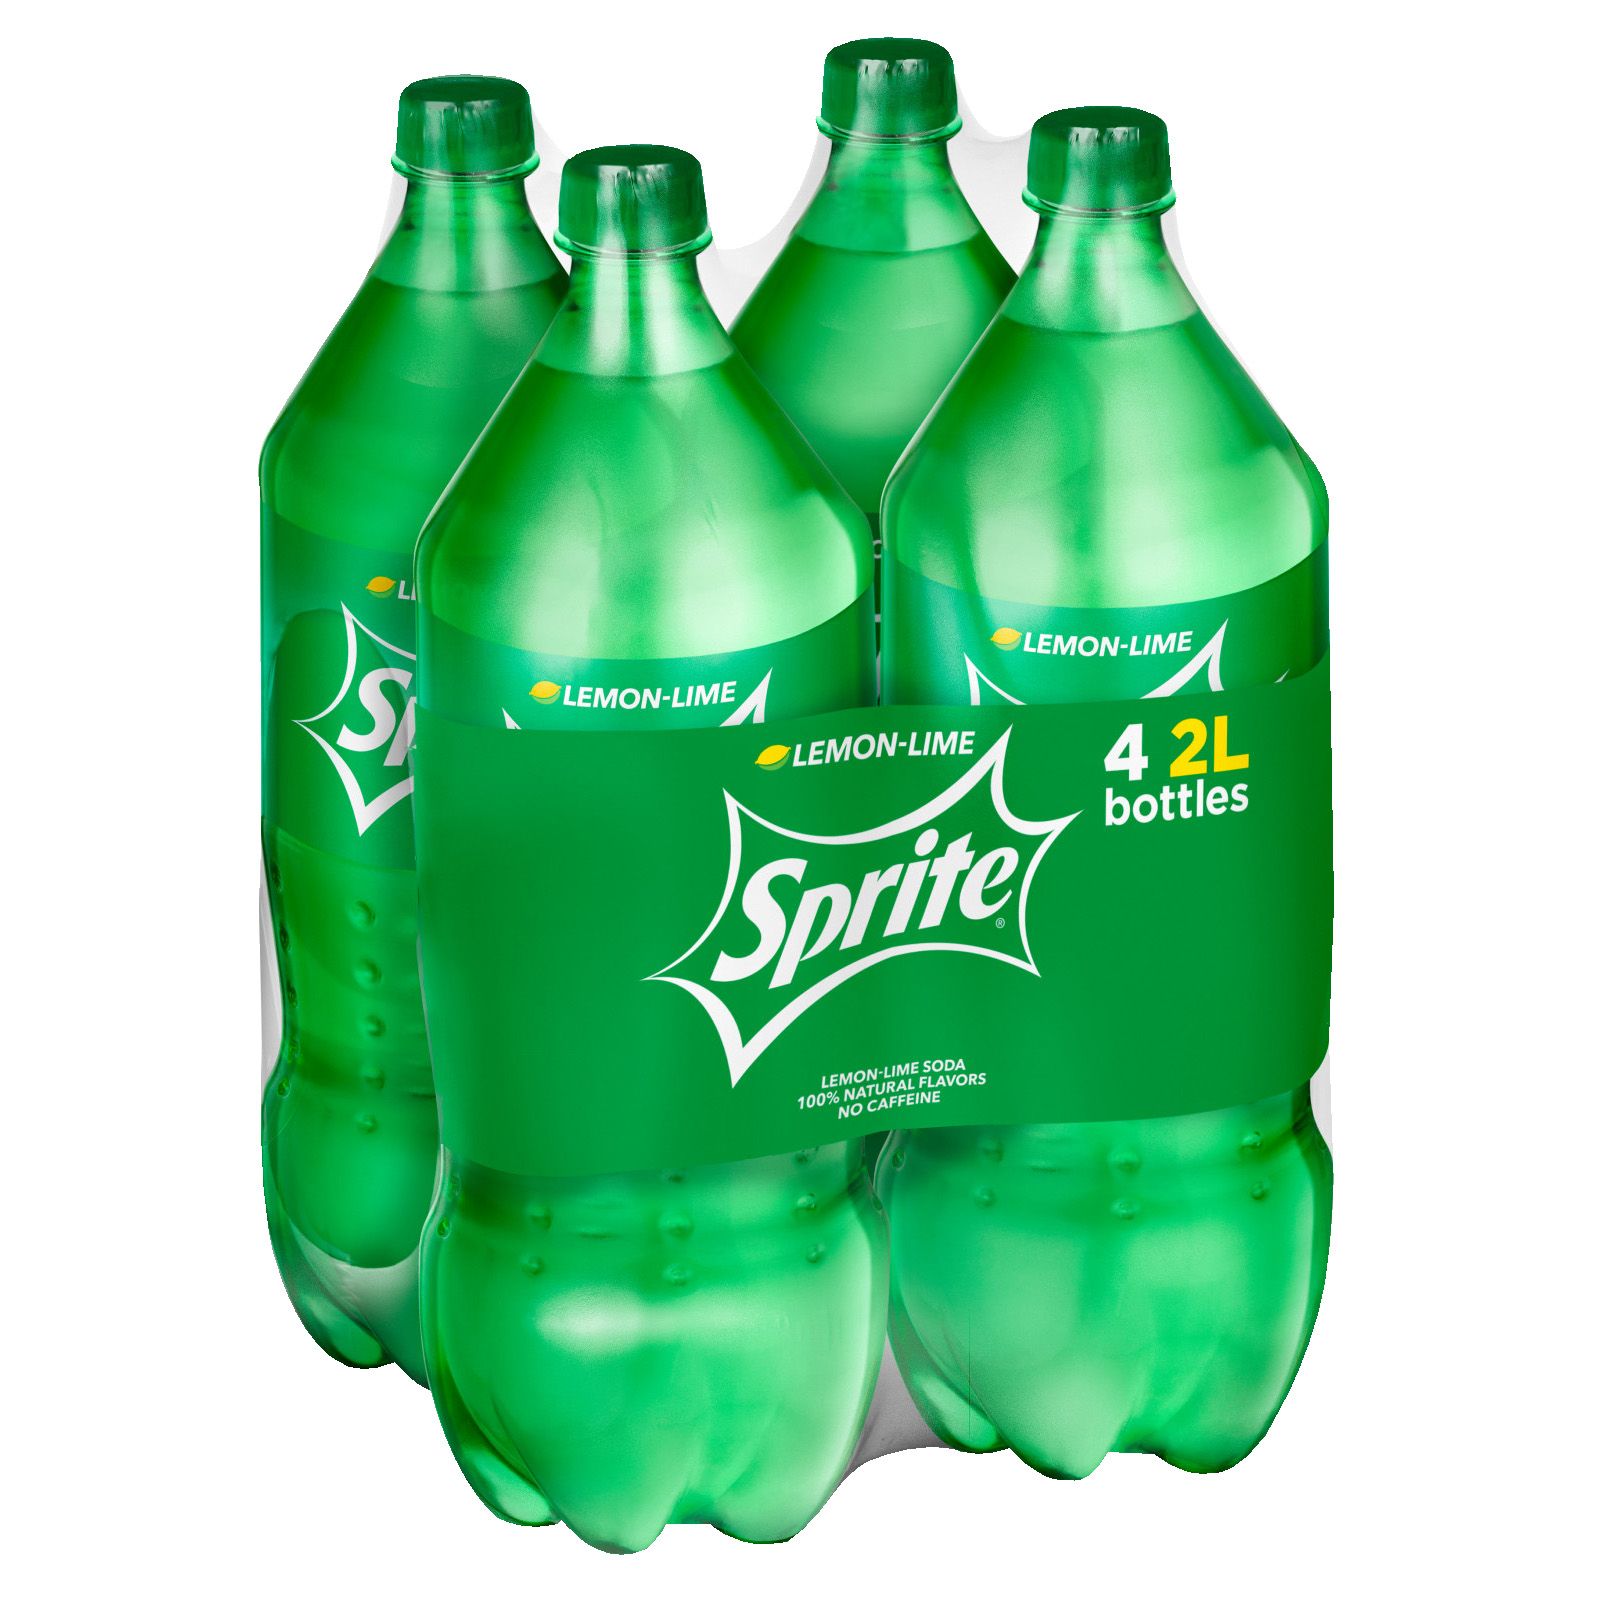 Sprite Soda Bottles, 4 pk./2L